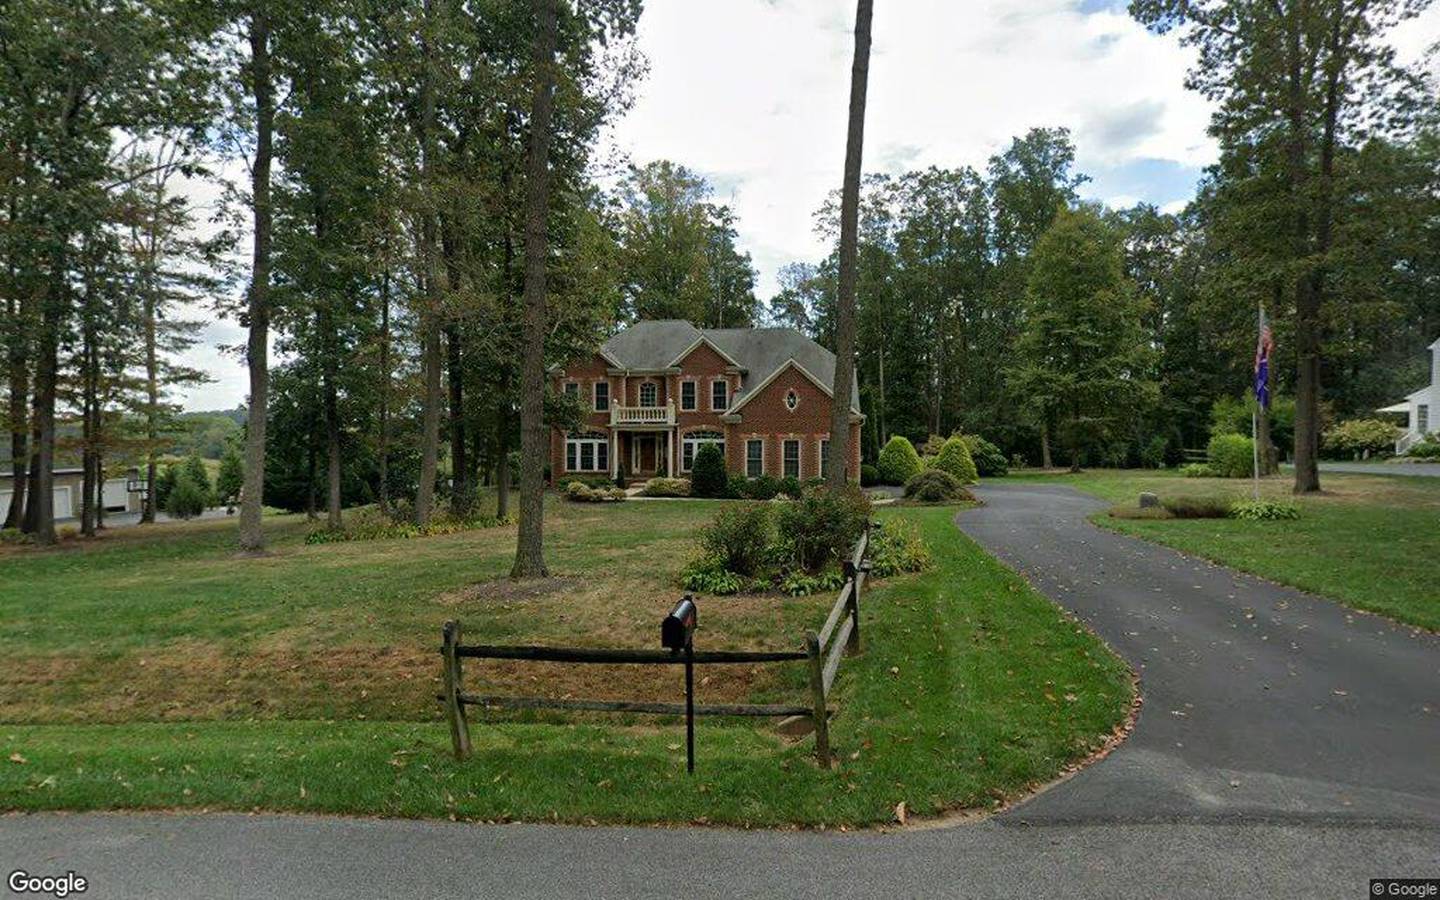 $779,000, detached house at 3017 Rockdale Road 